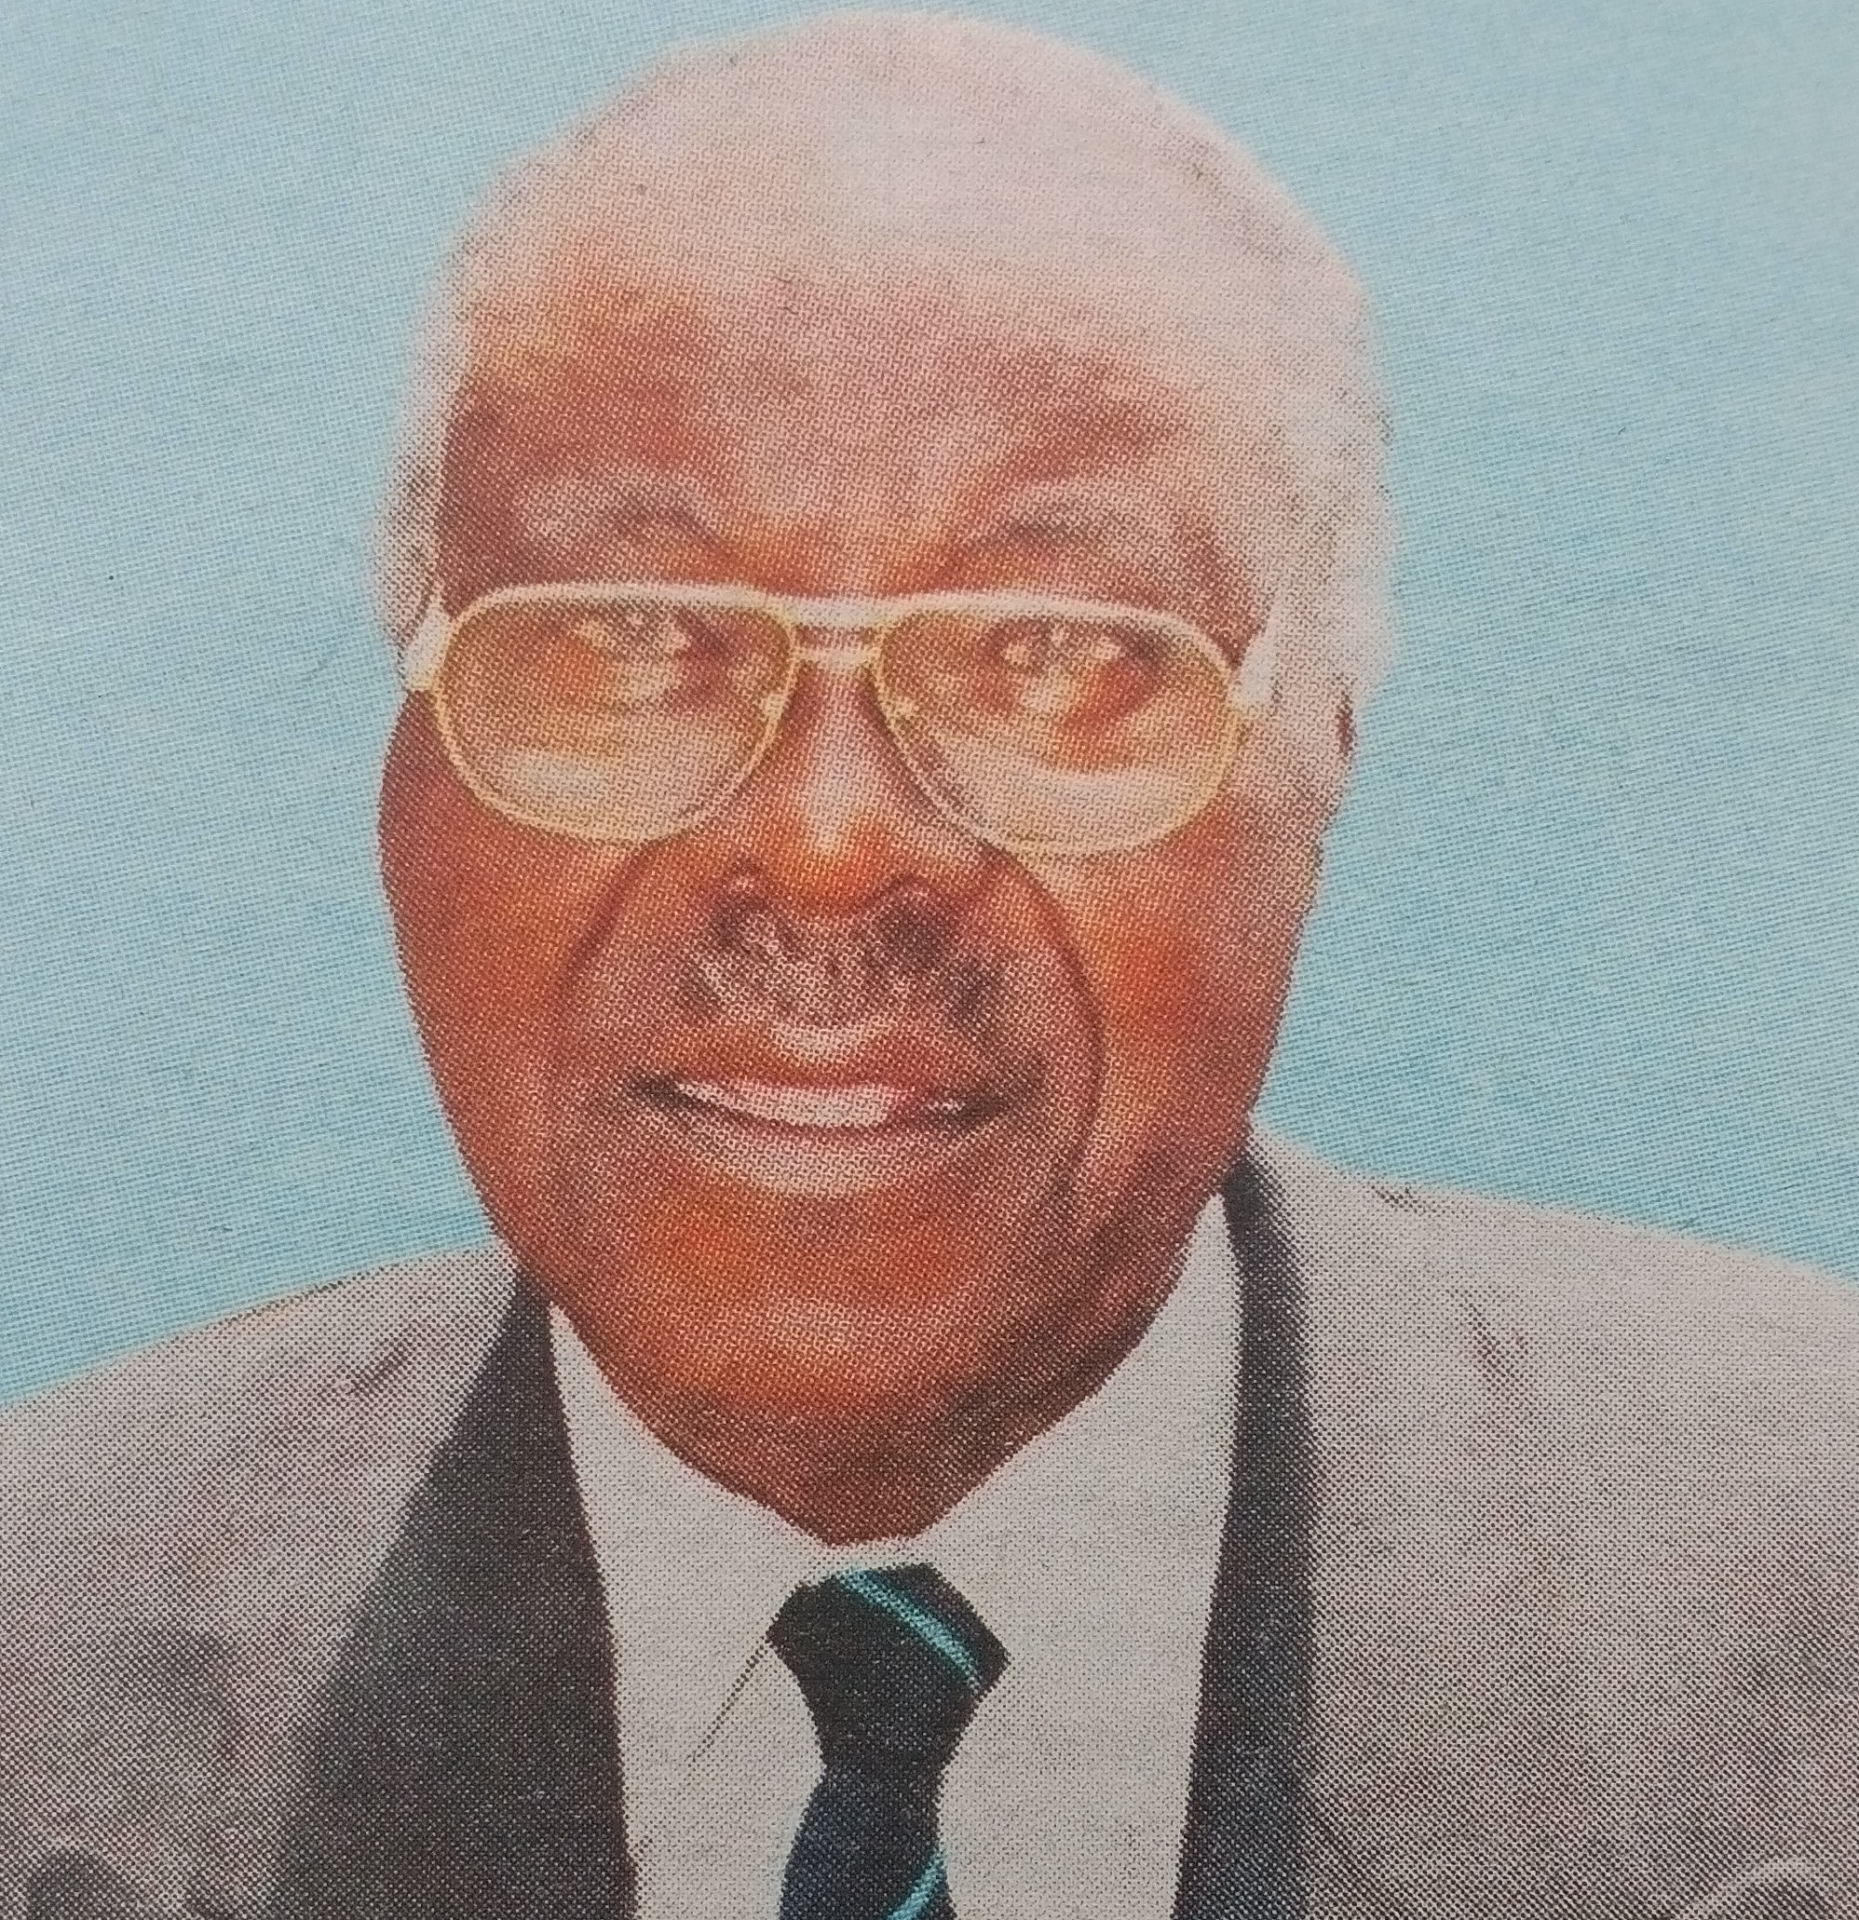 Obituary Image of John Mamboleo Onsando